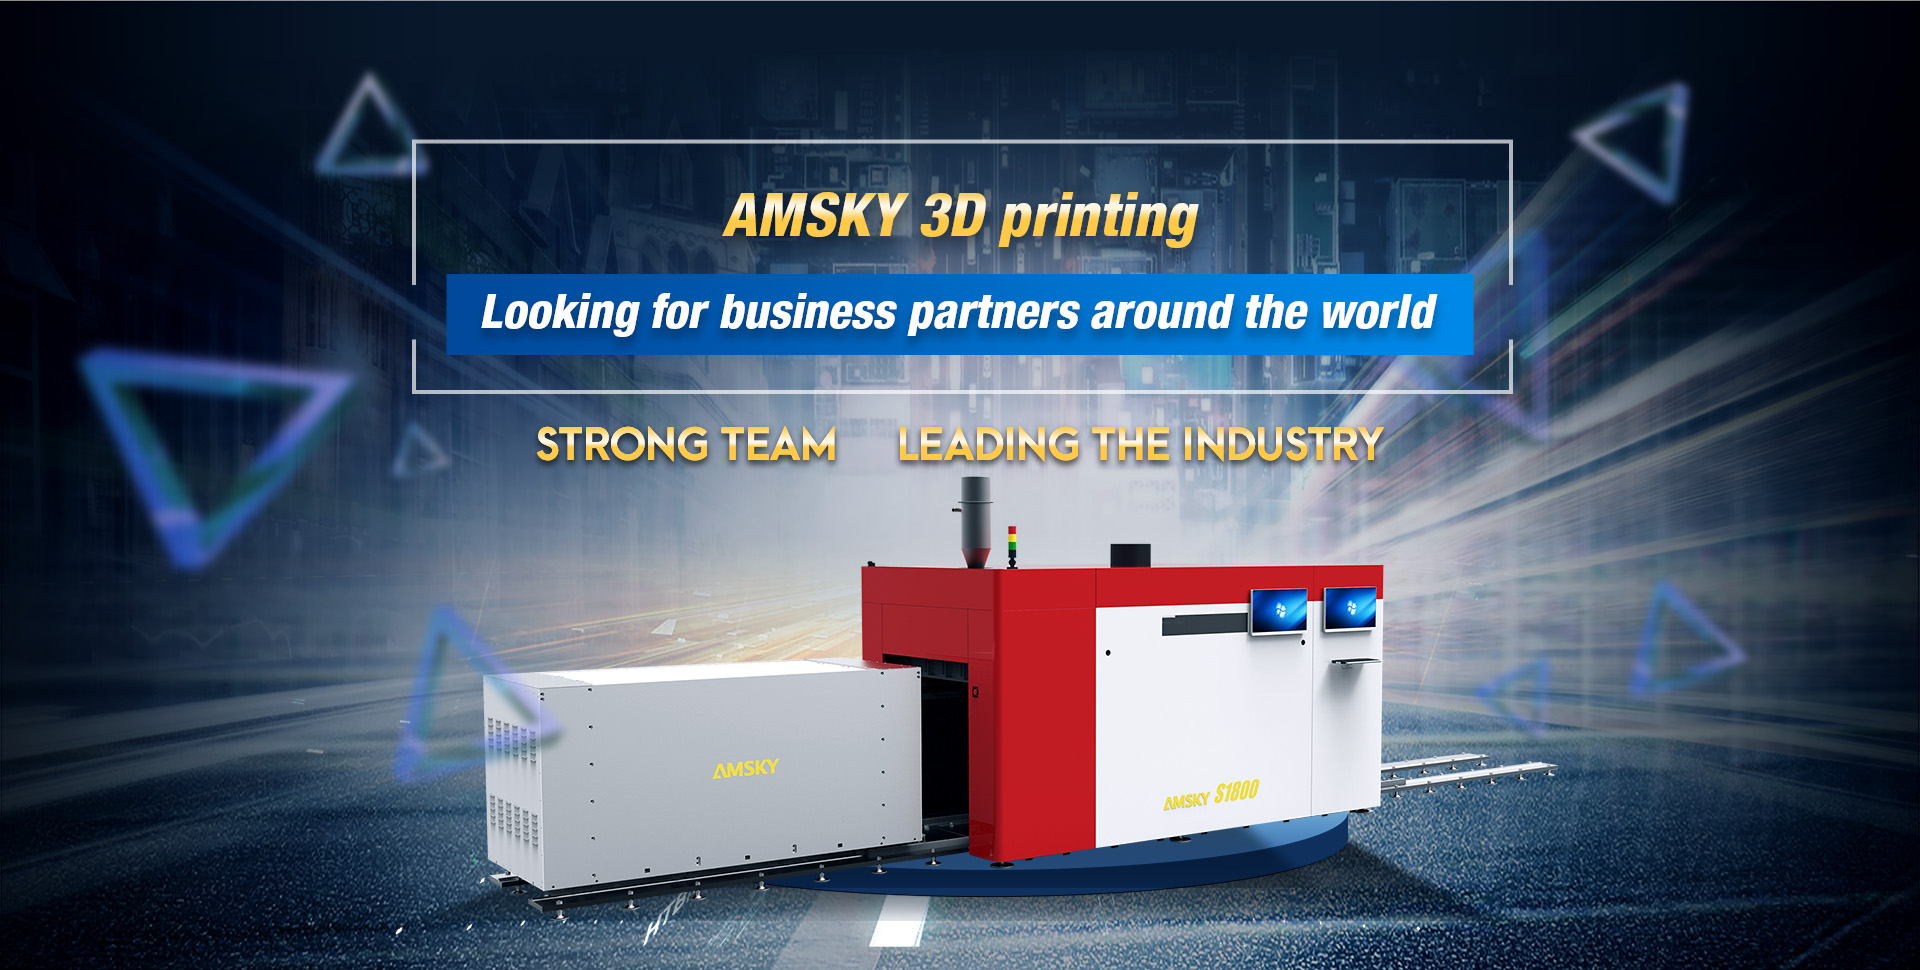 AMSKY 3D 프린팅 센터